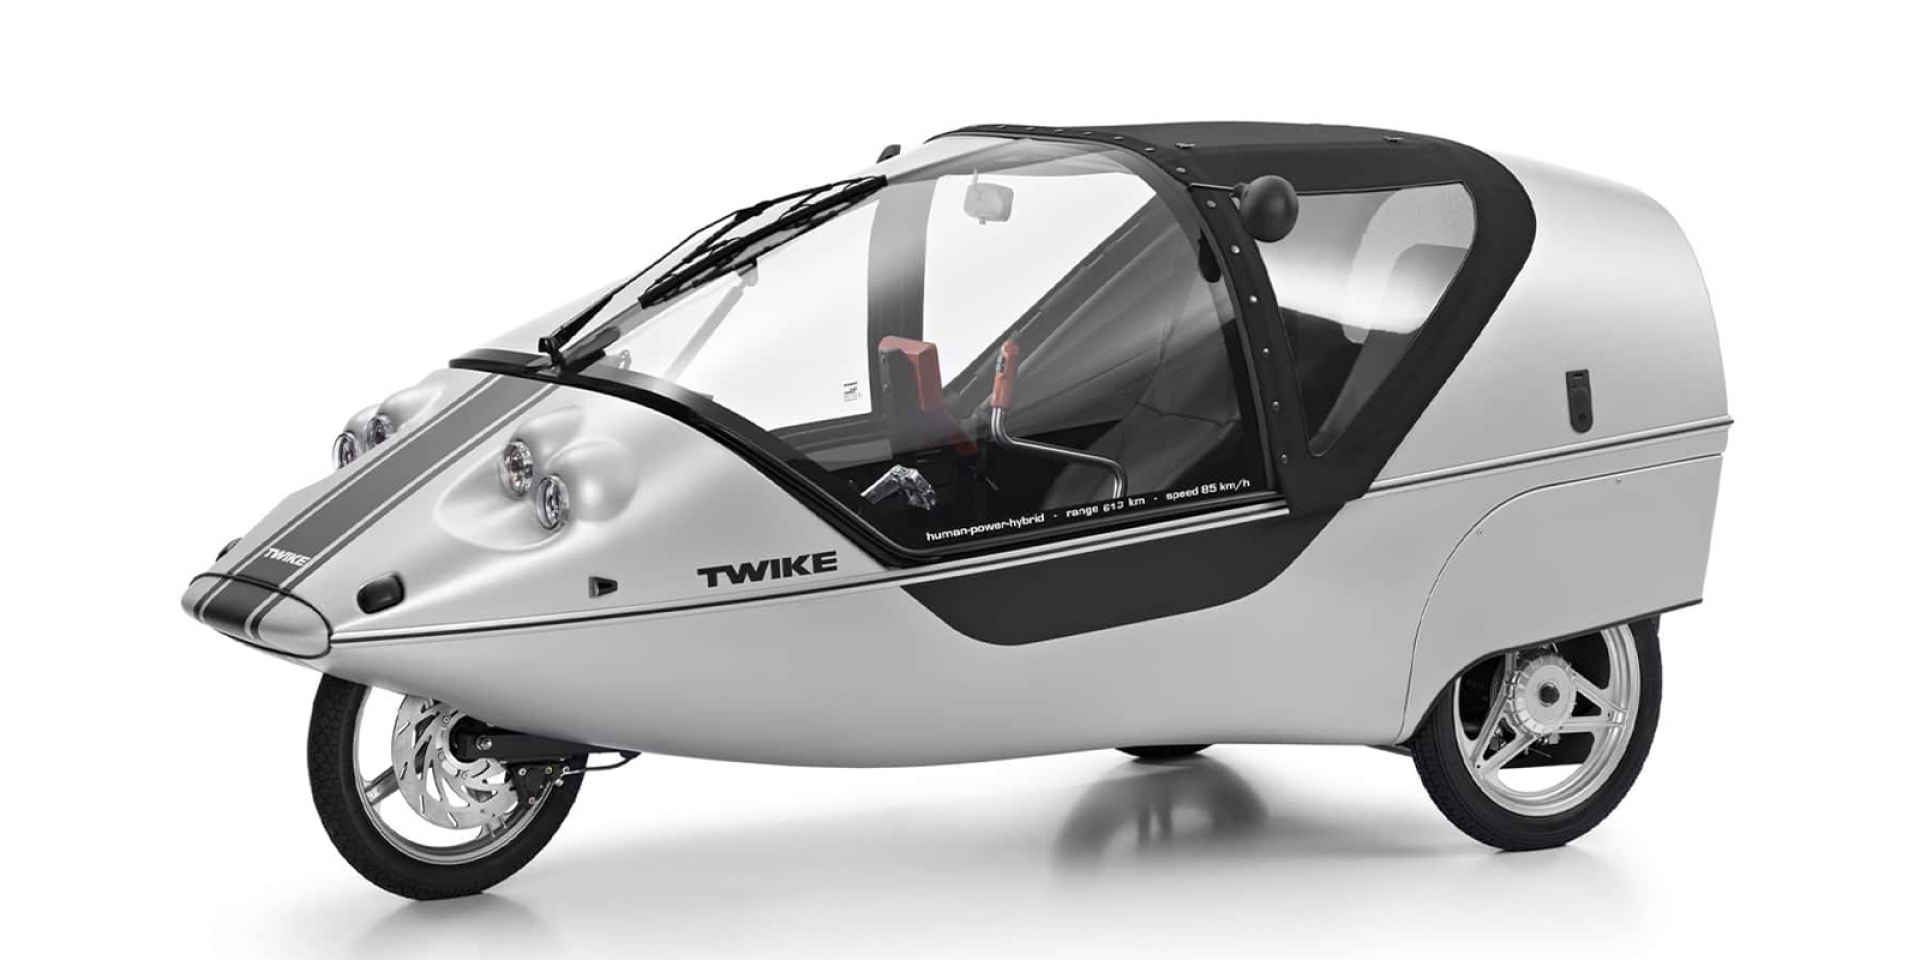 Twike：一種結合了人力和電力的三輪電動車